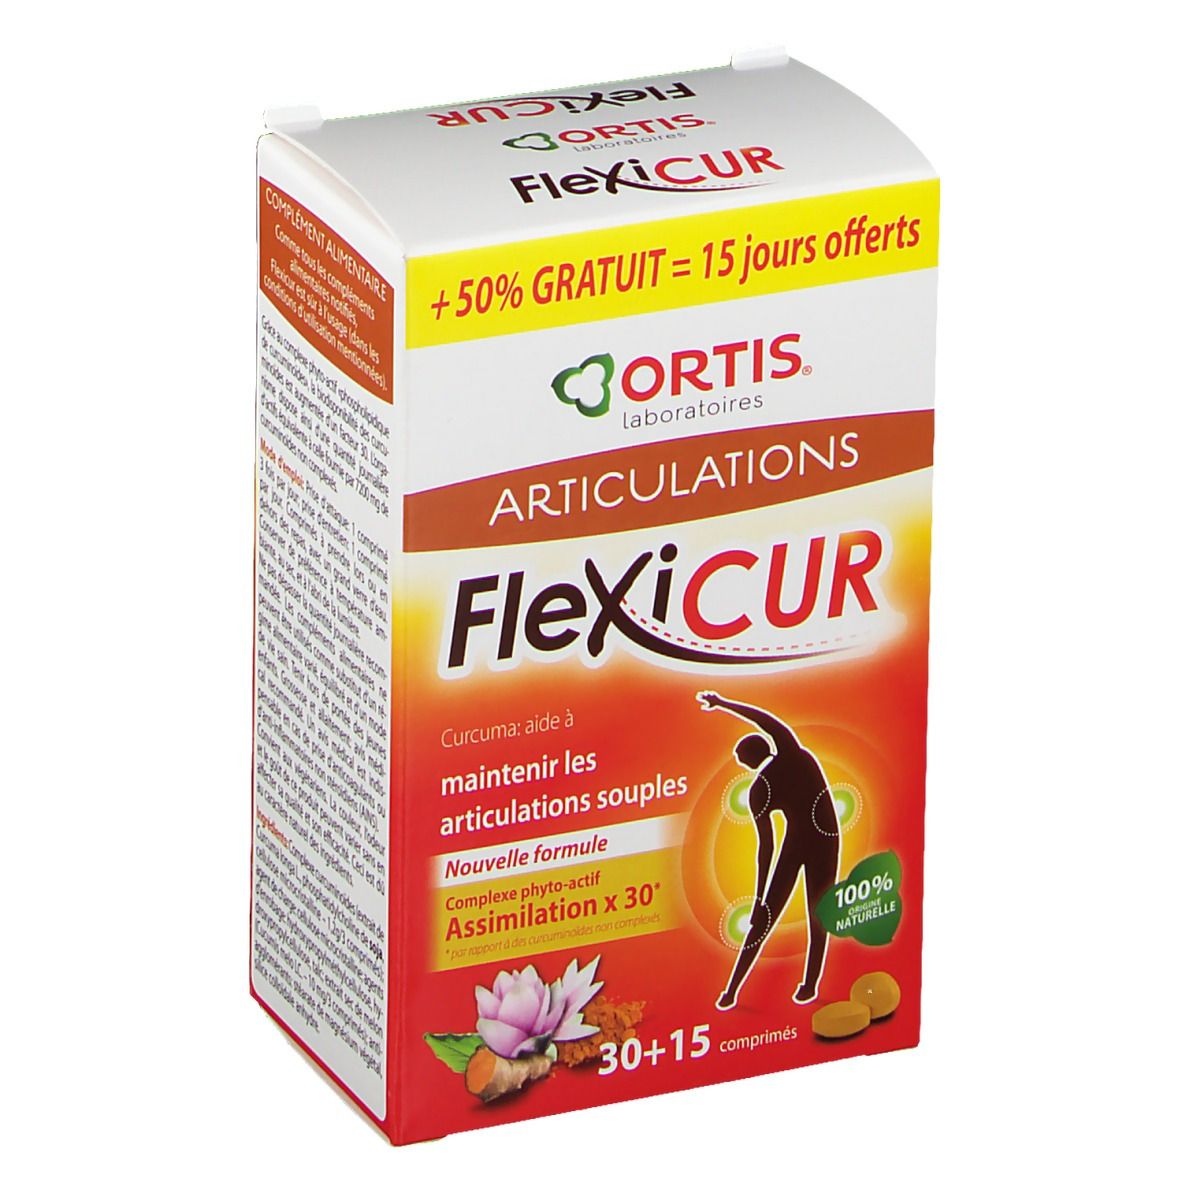 Ortis Flexicur + 15 Comprimés GRATUIT